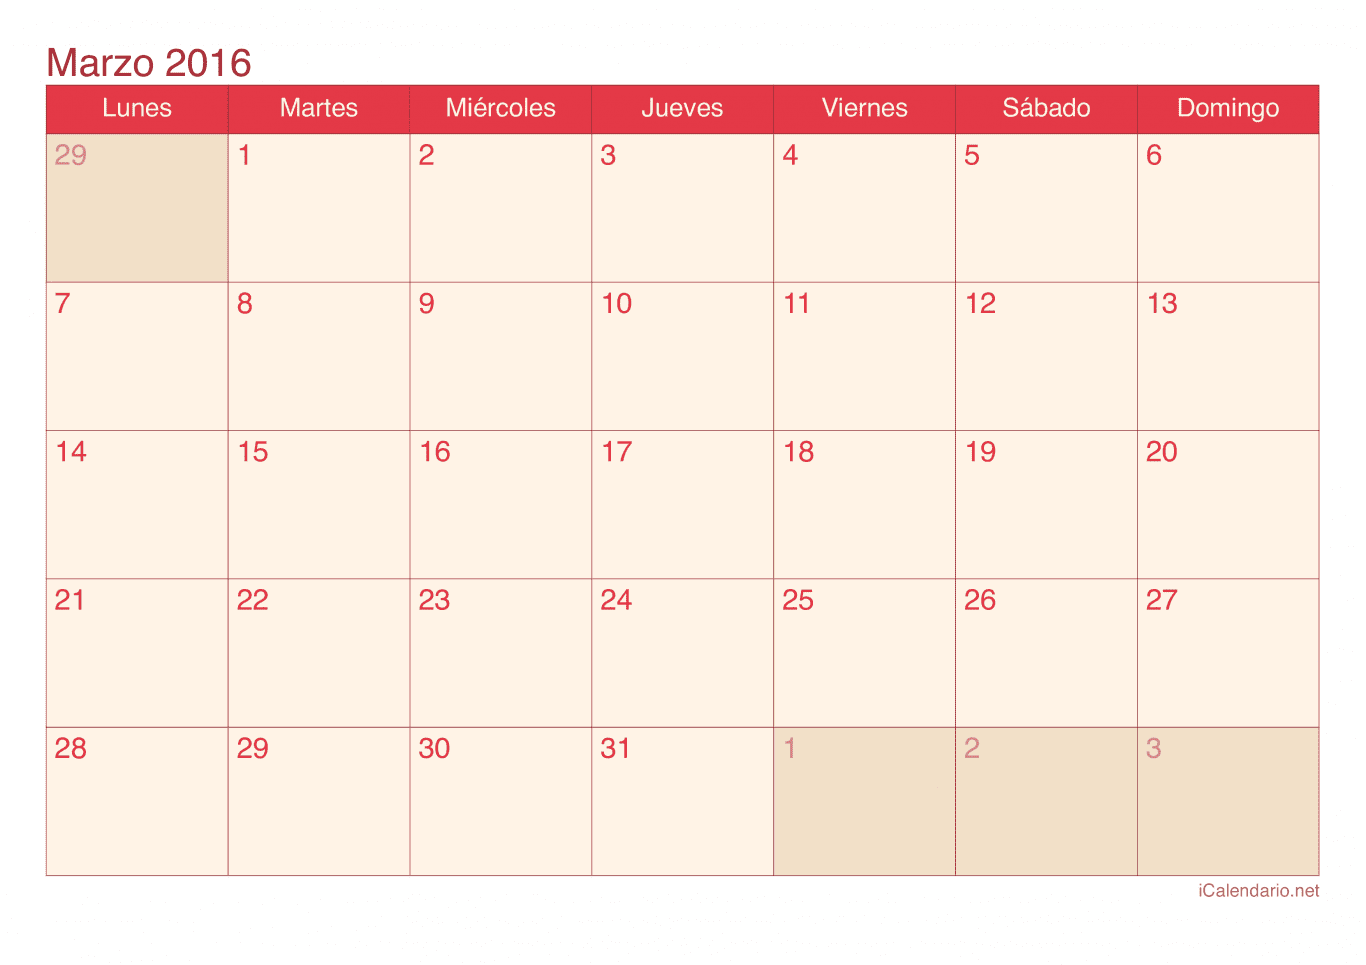 Calendario de marzo 2016 - Cherry